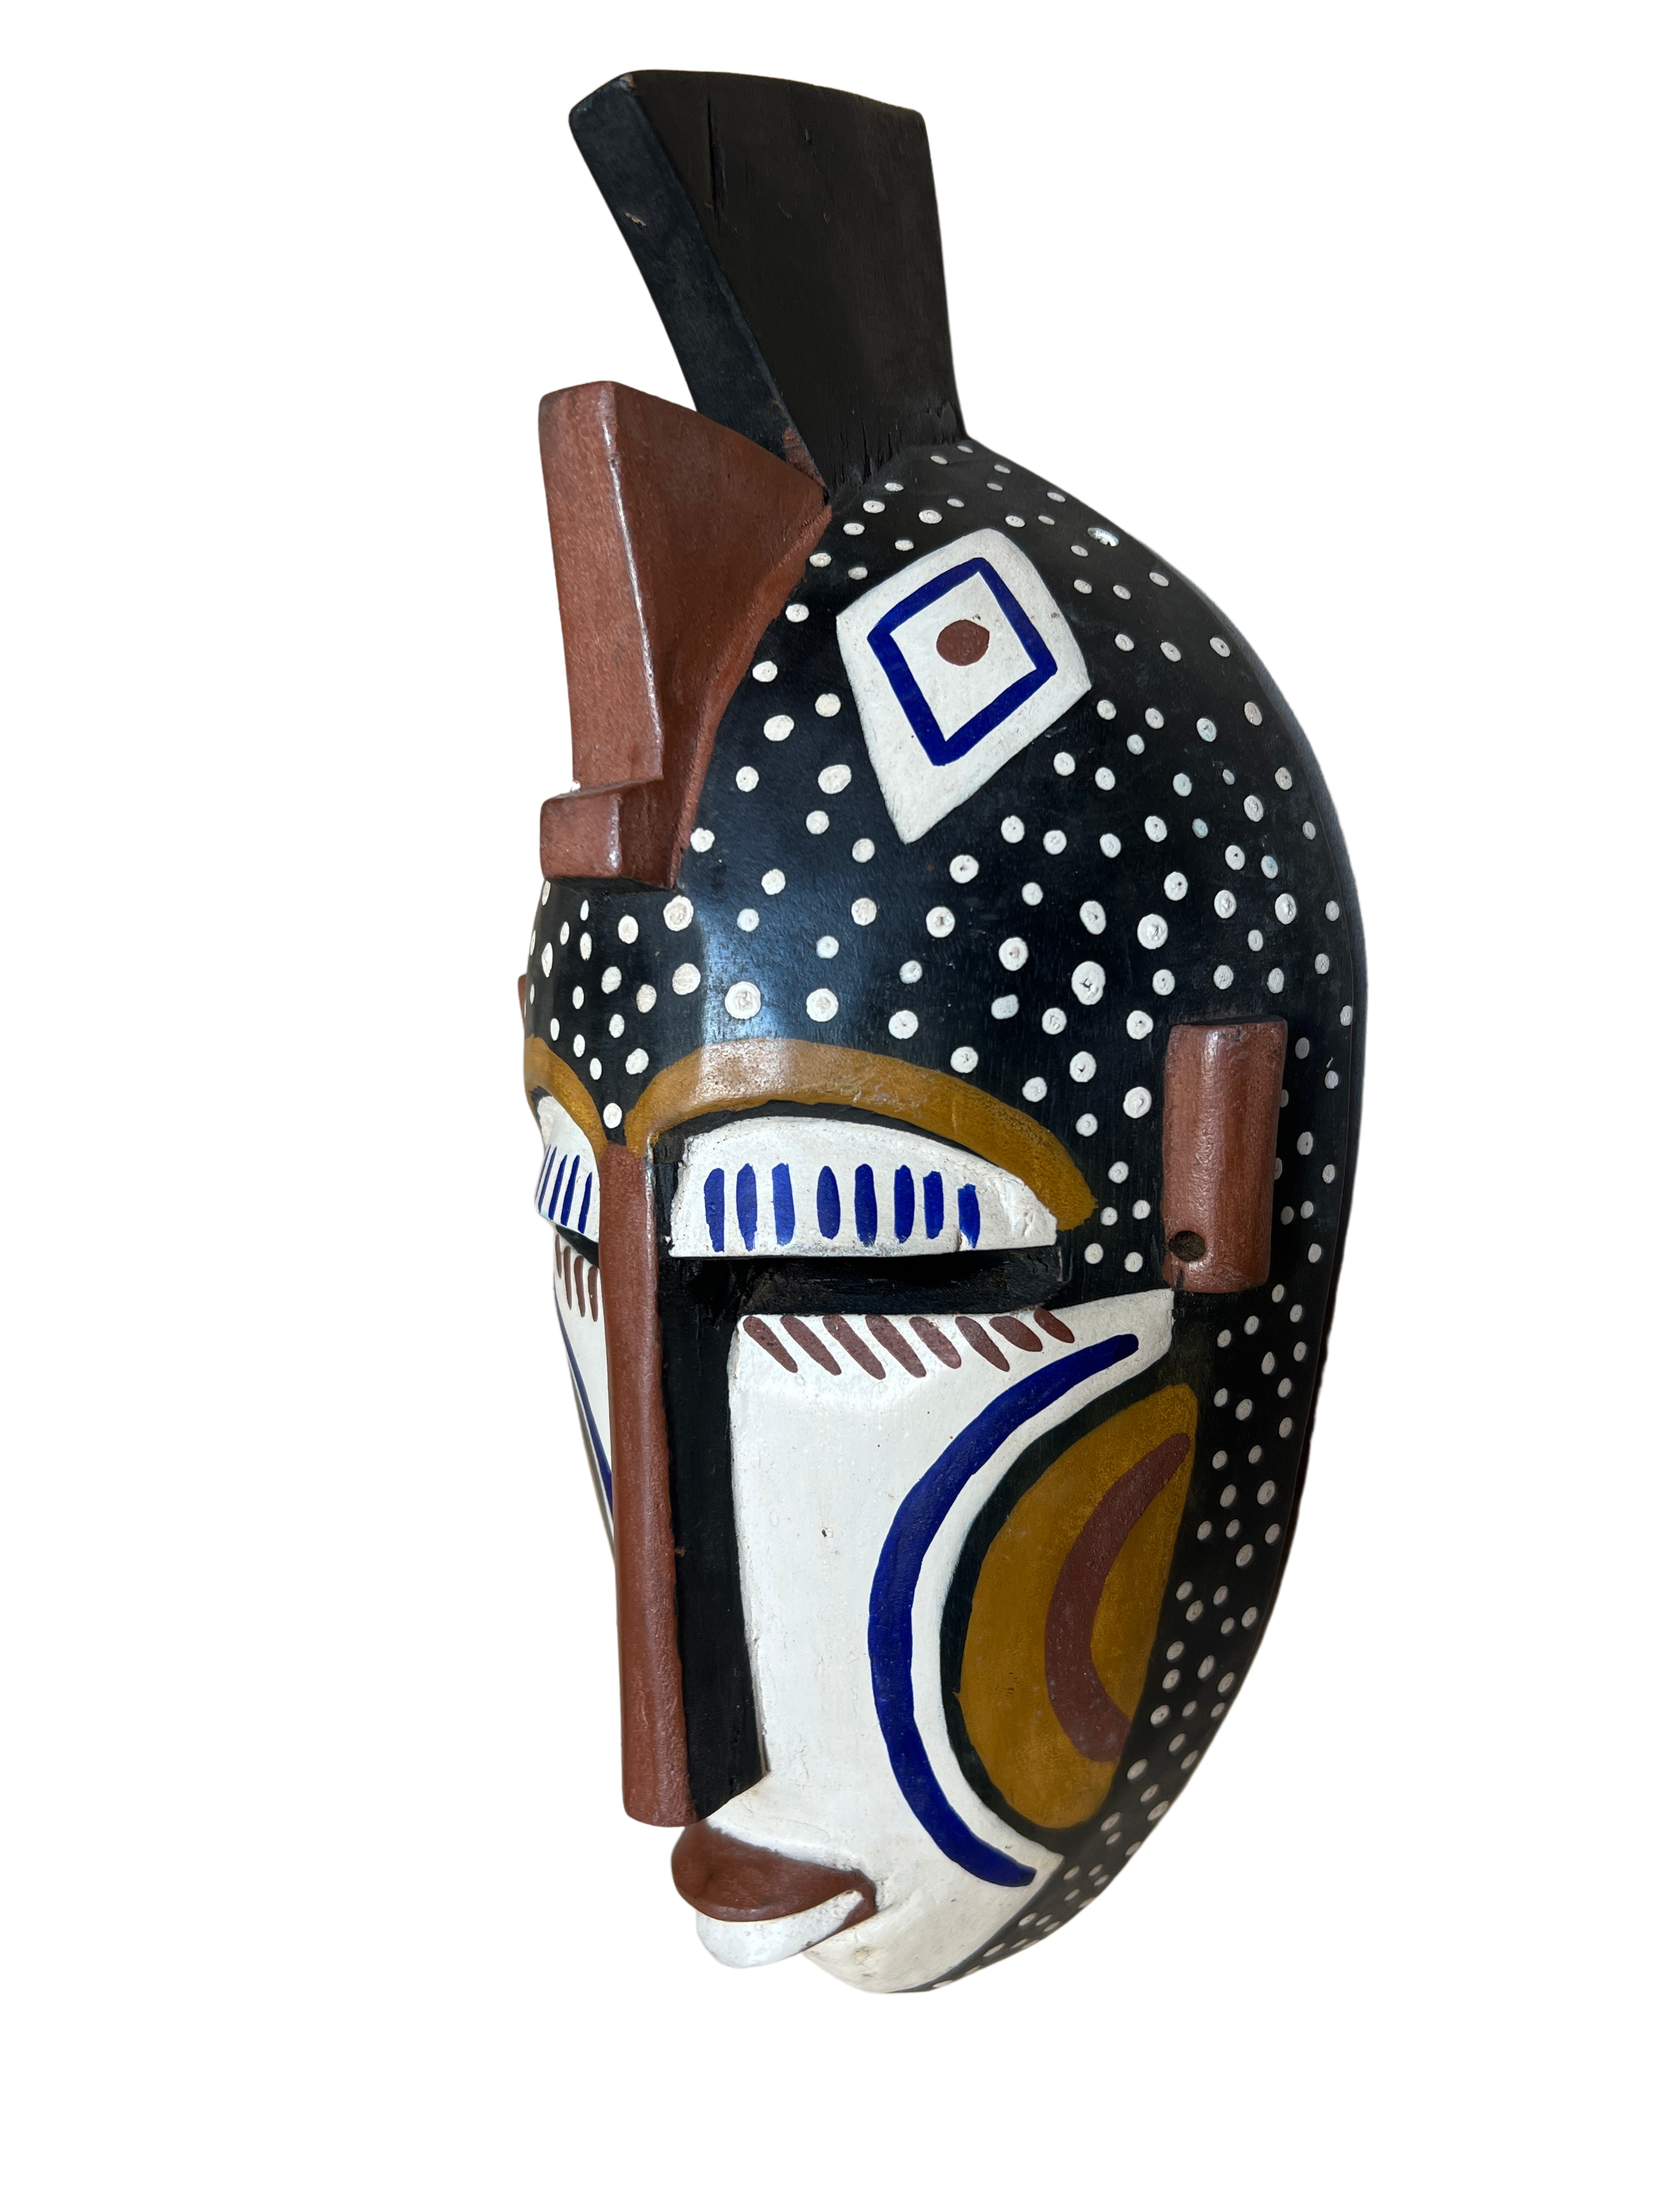 Dogon Painted Mask - Dogon